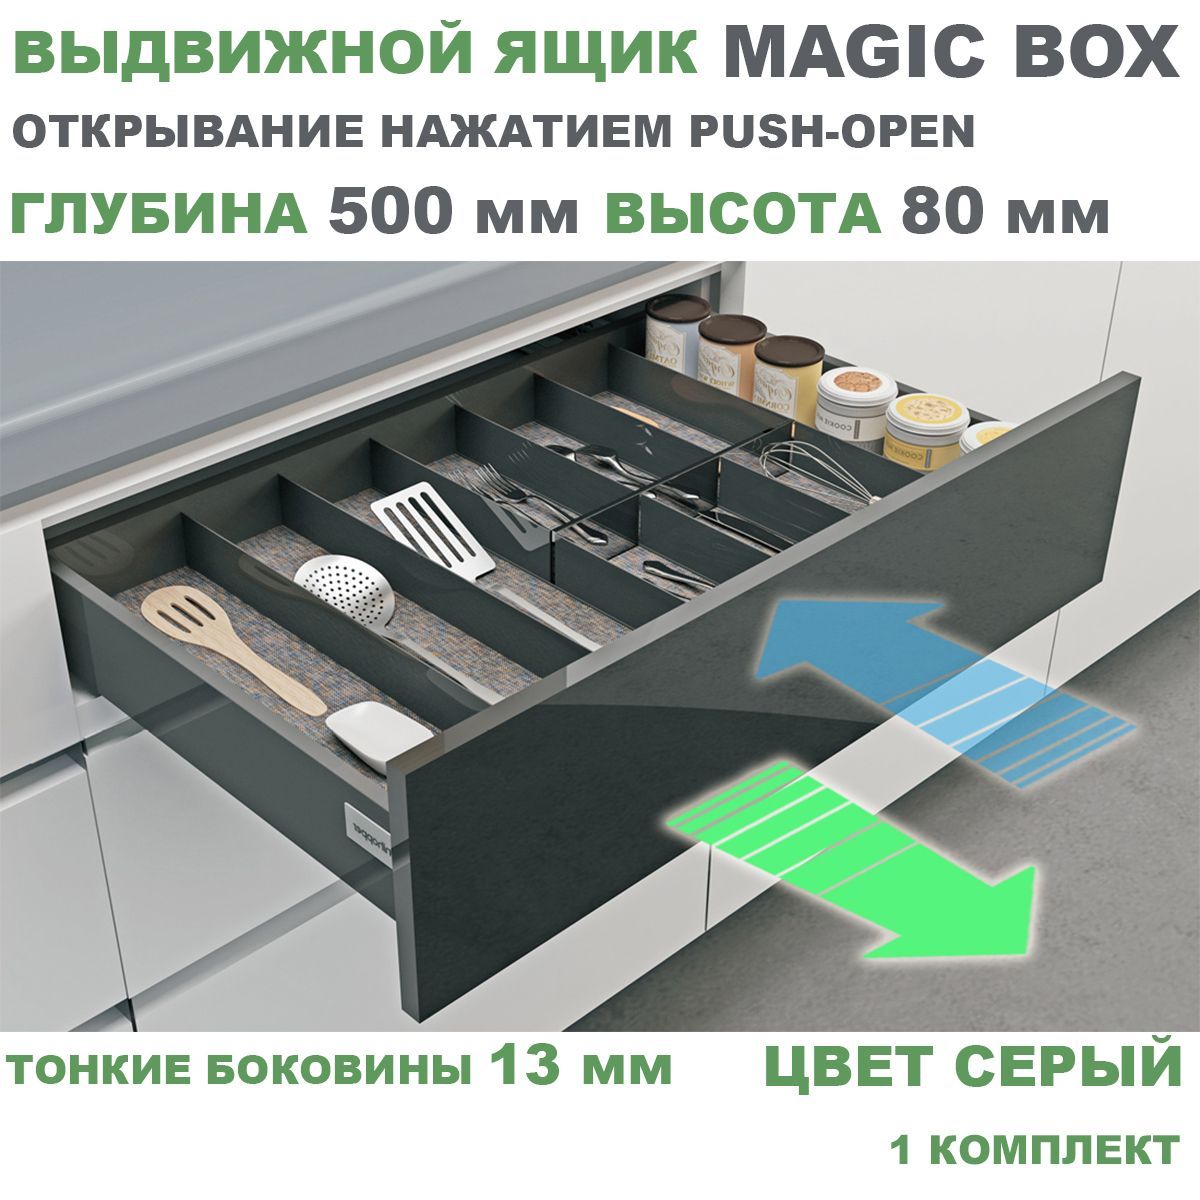 Выдвижные ящики Unihopper Magic Box